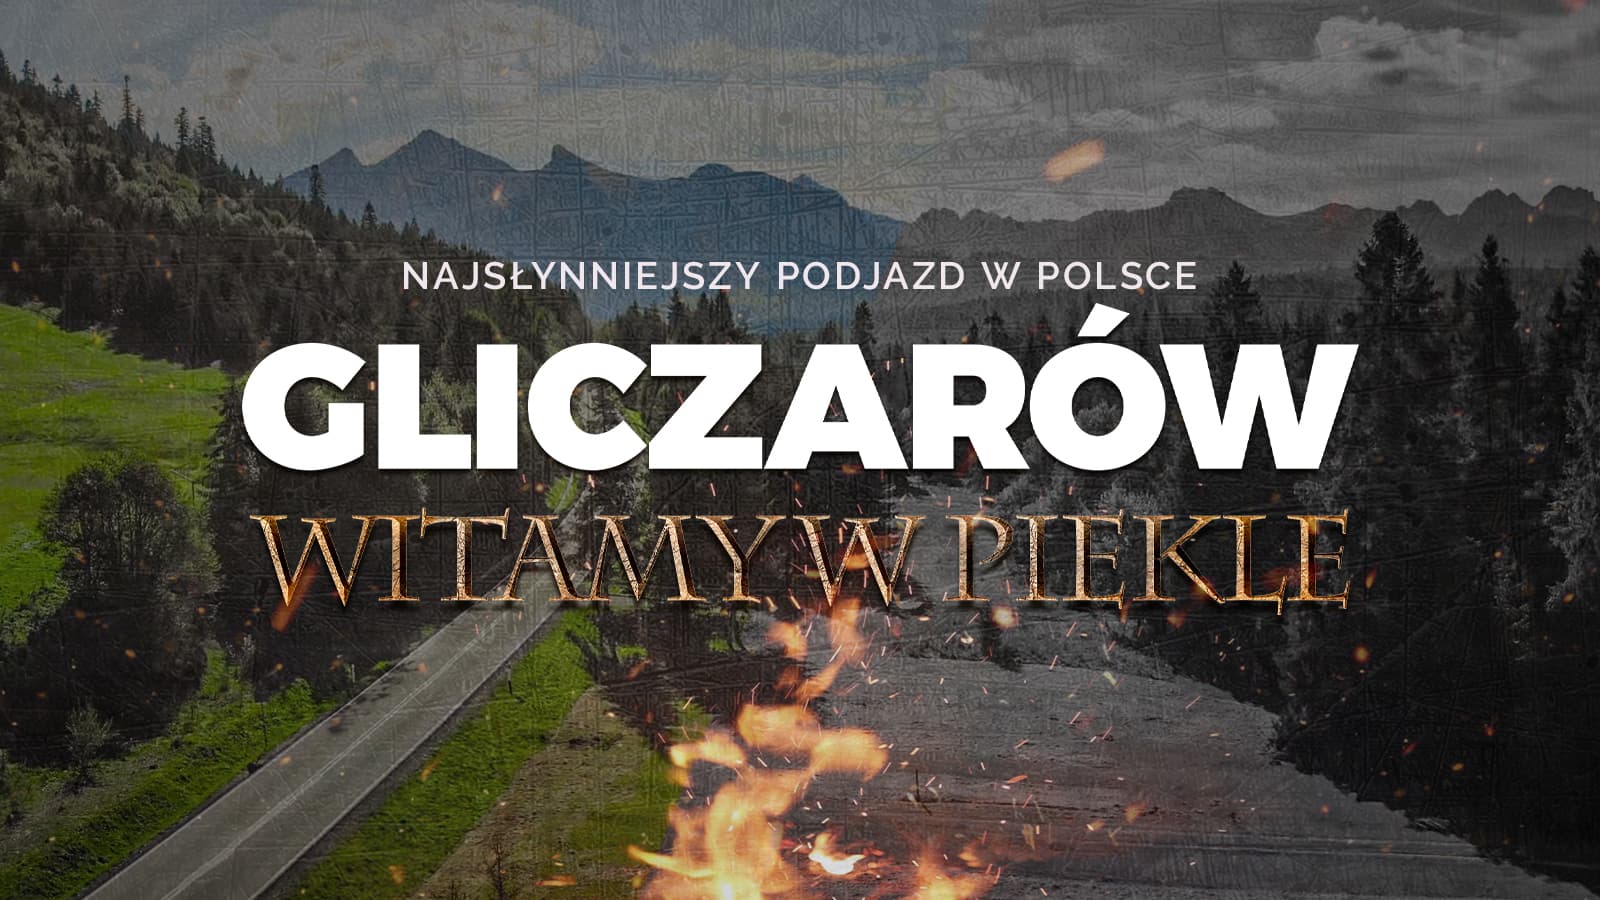 Oto najsłynniejszy podjazd w Polsce: Gliczarów. „Witamy w piekle”